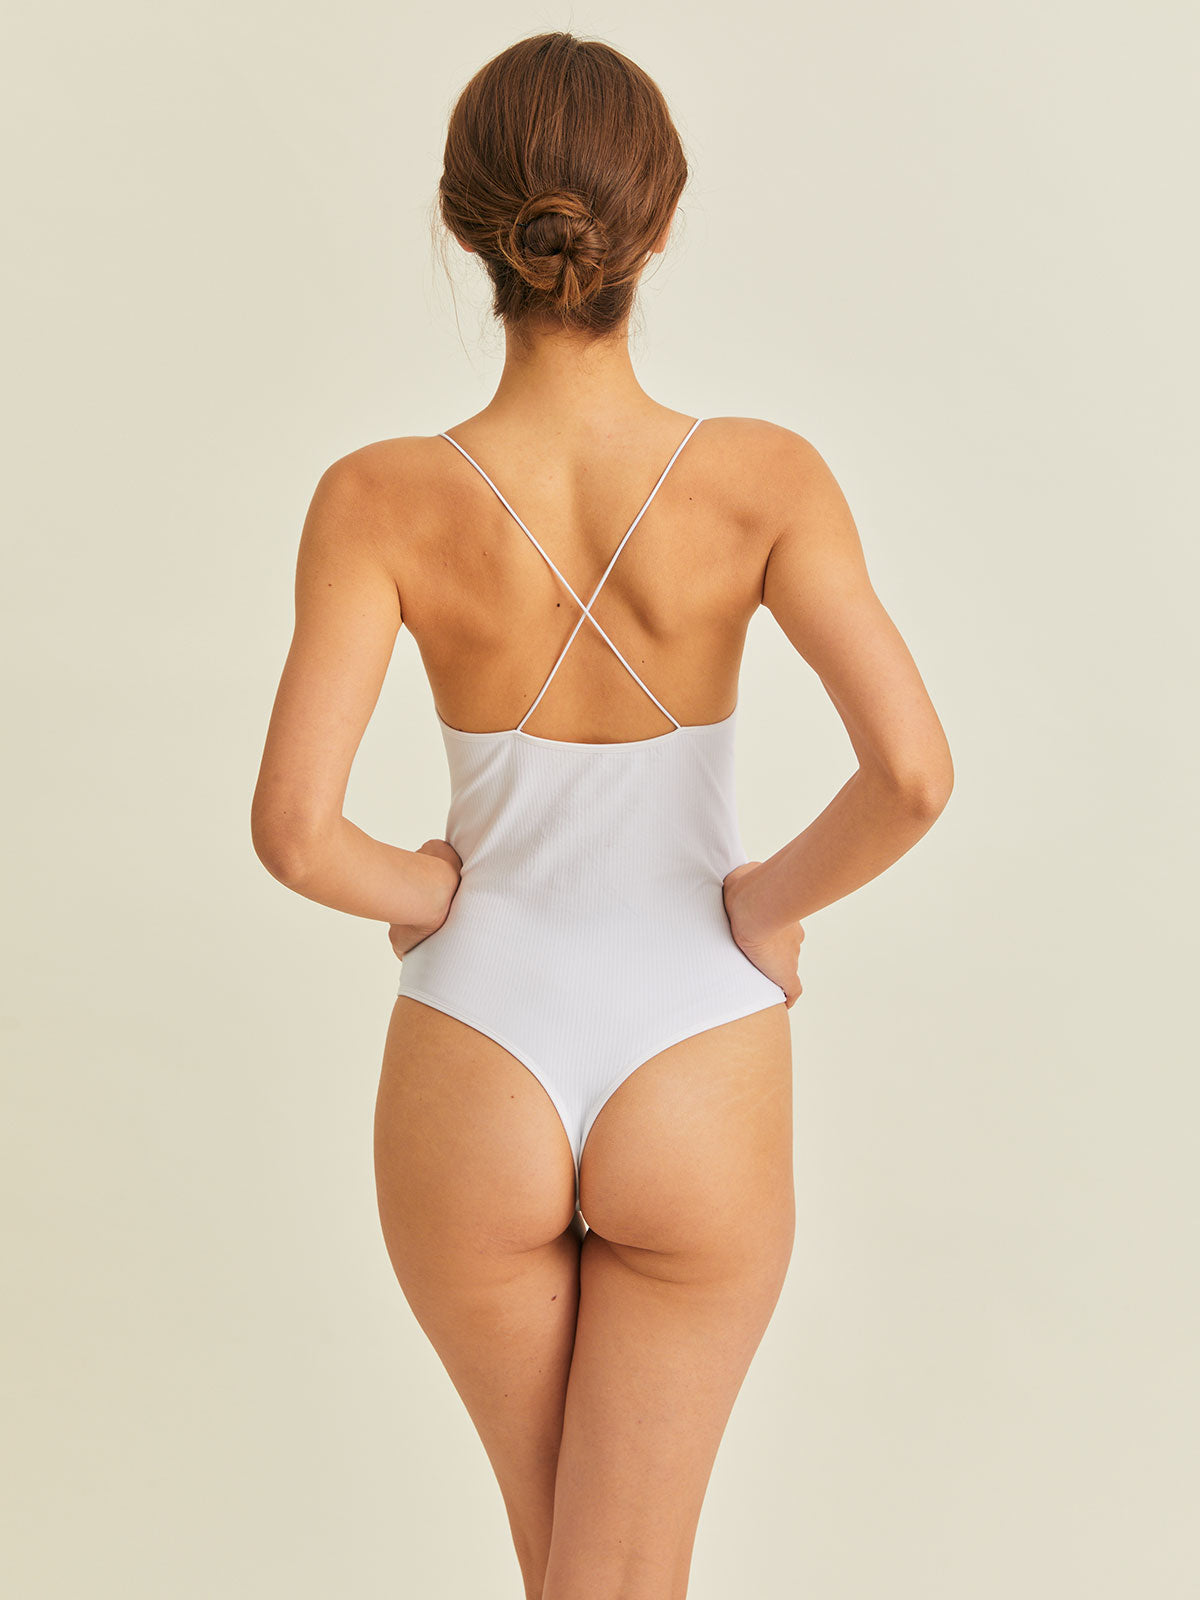 White Criss-Cross Backless Sleeveless Bodysuit & Reviews - Light  Blue,Black,White - Sustainable Bodysuits